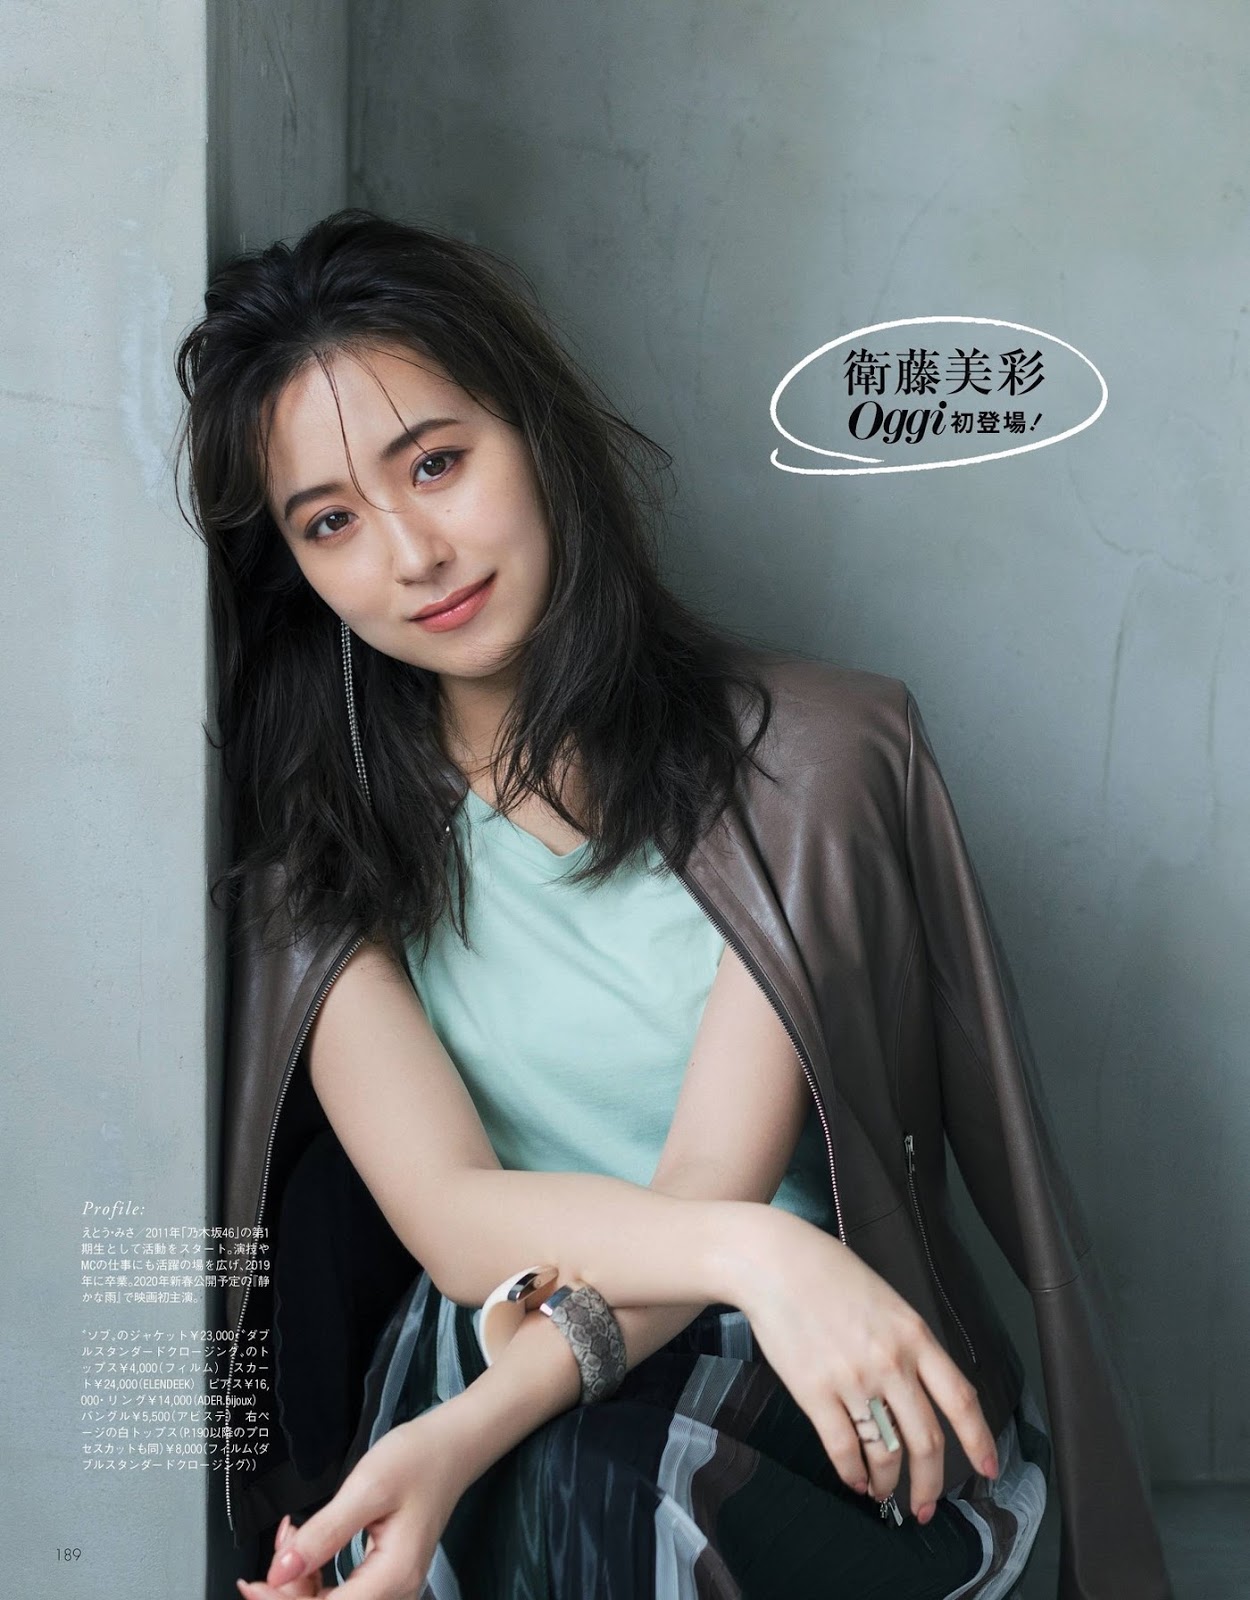 卫藤美彩 Oggi Magazine 2019.10